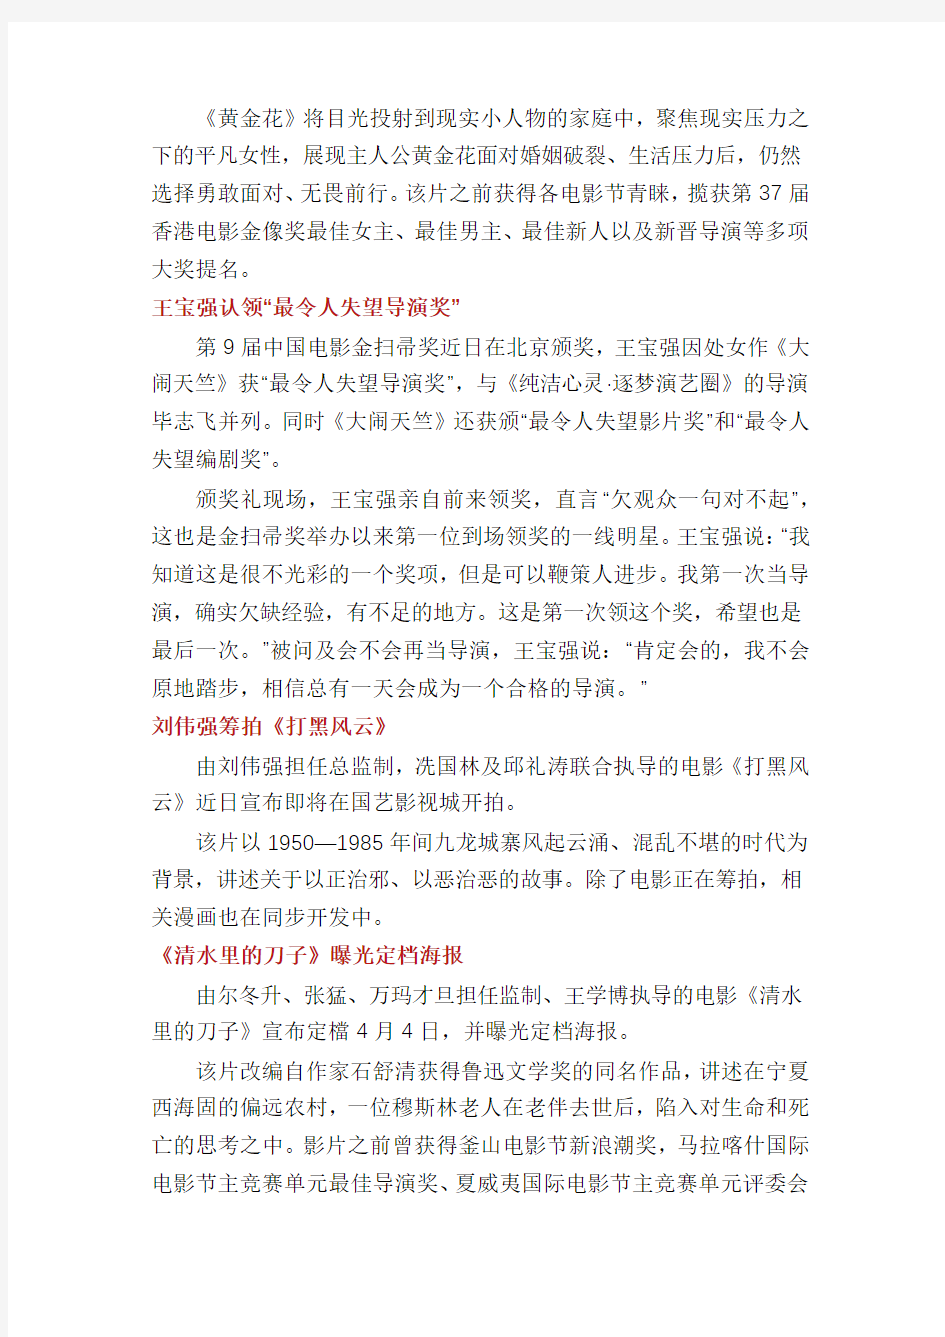 姜文出任上海国际电影节金爵奖评委会主席等